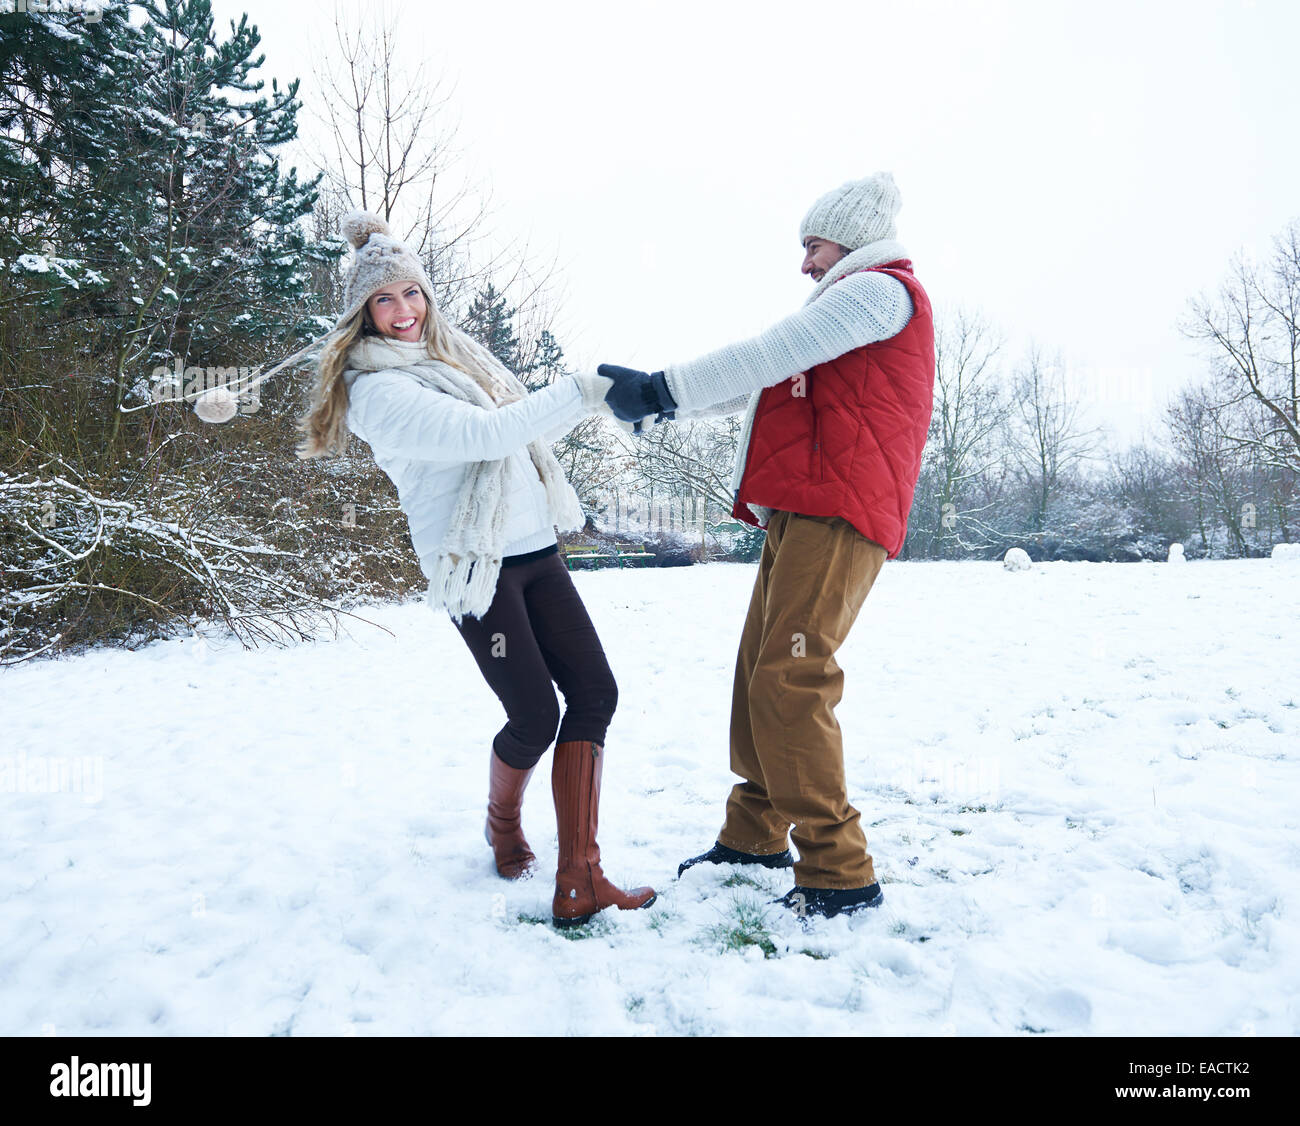 Glückliches Paar zusammen tanzen, im Winter Schnee Landschaft Stockfoto